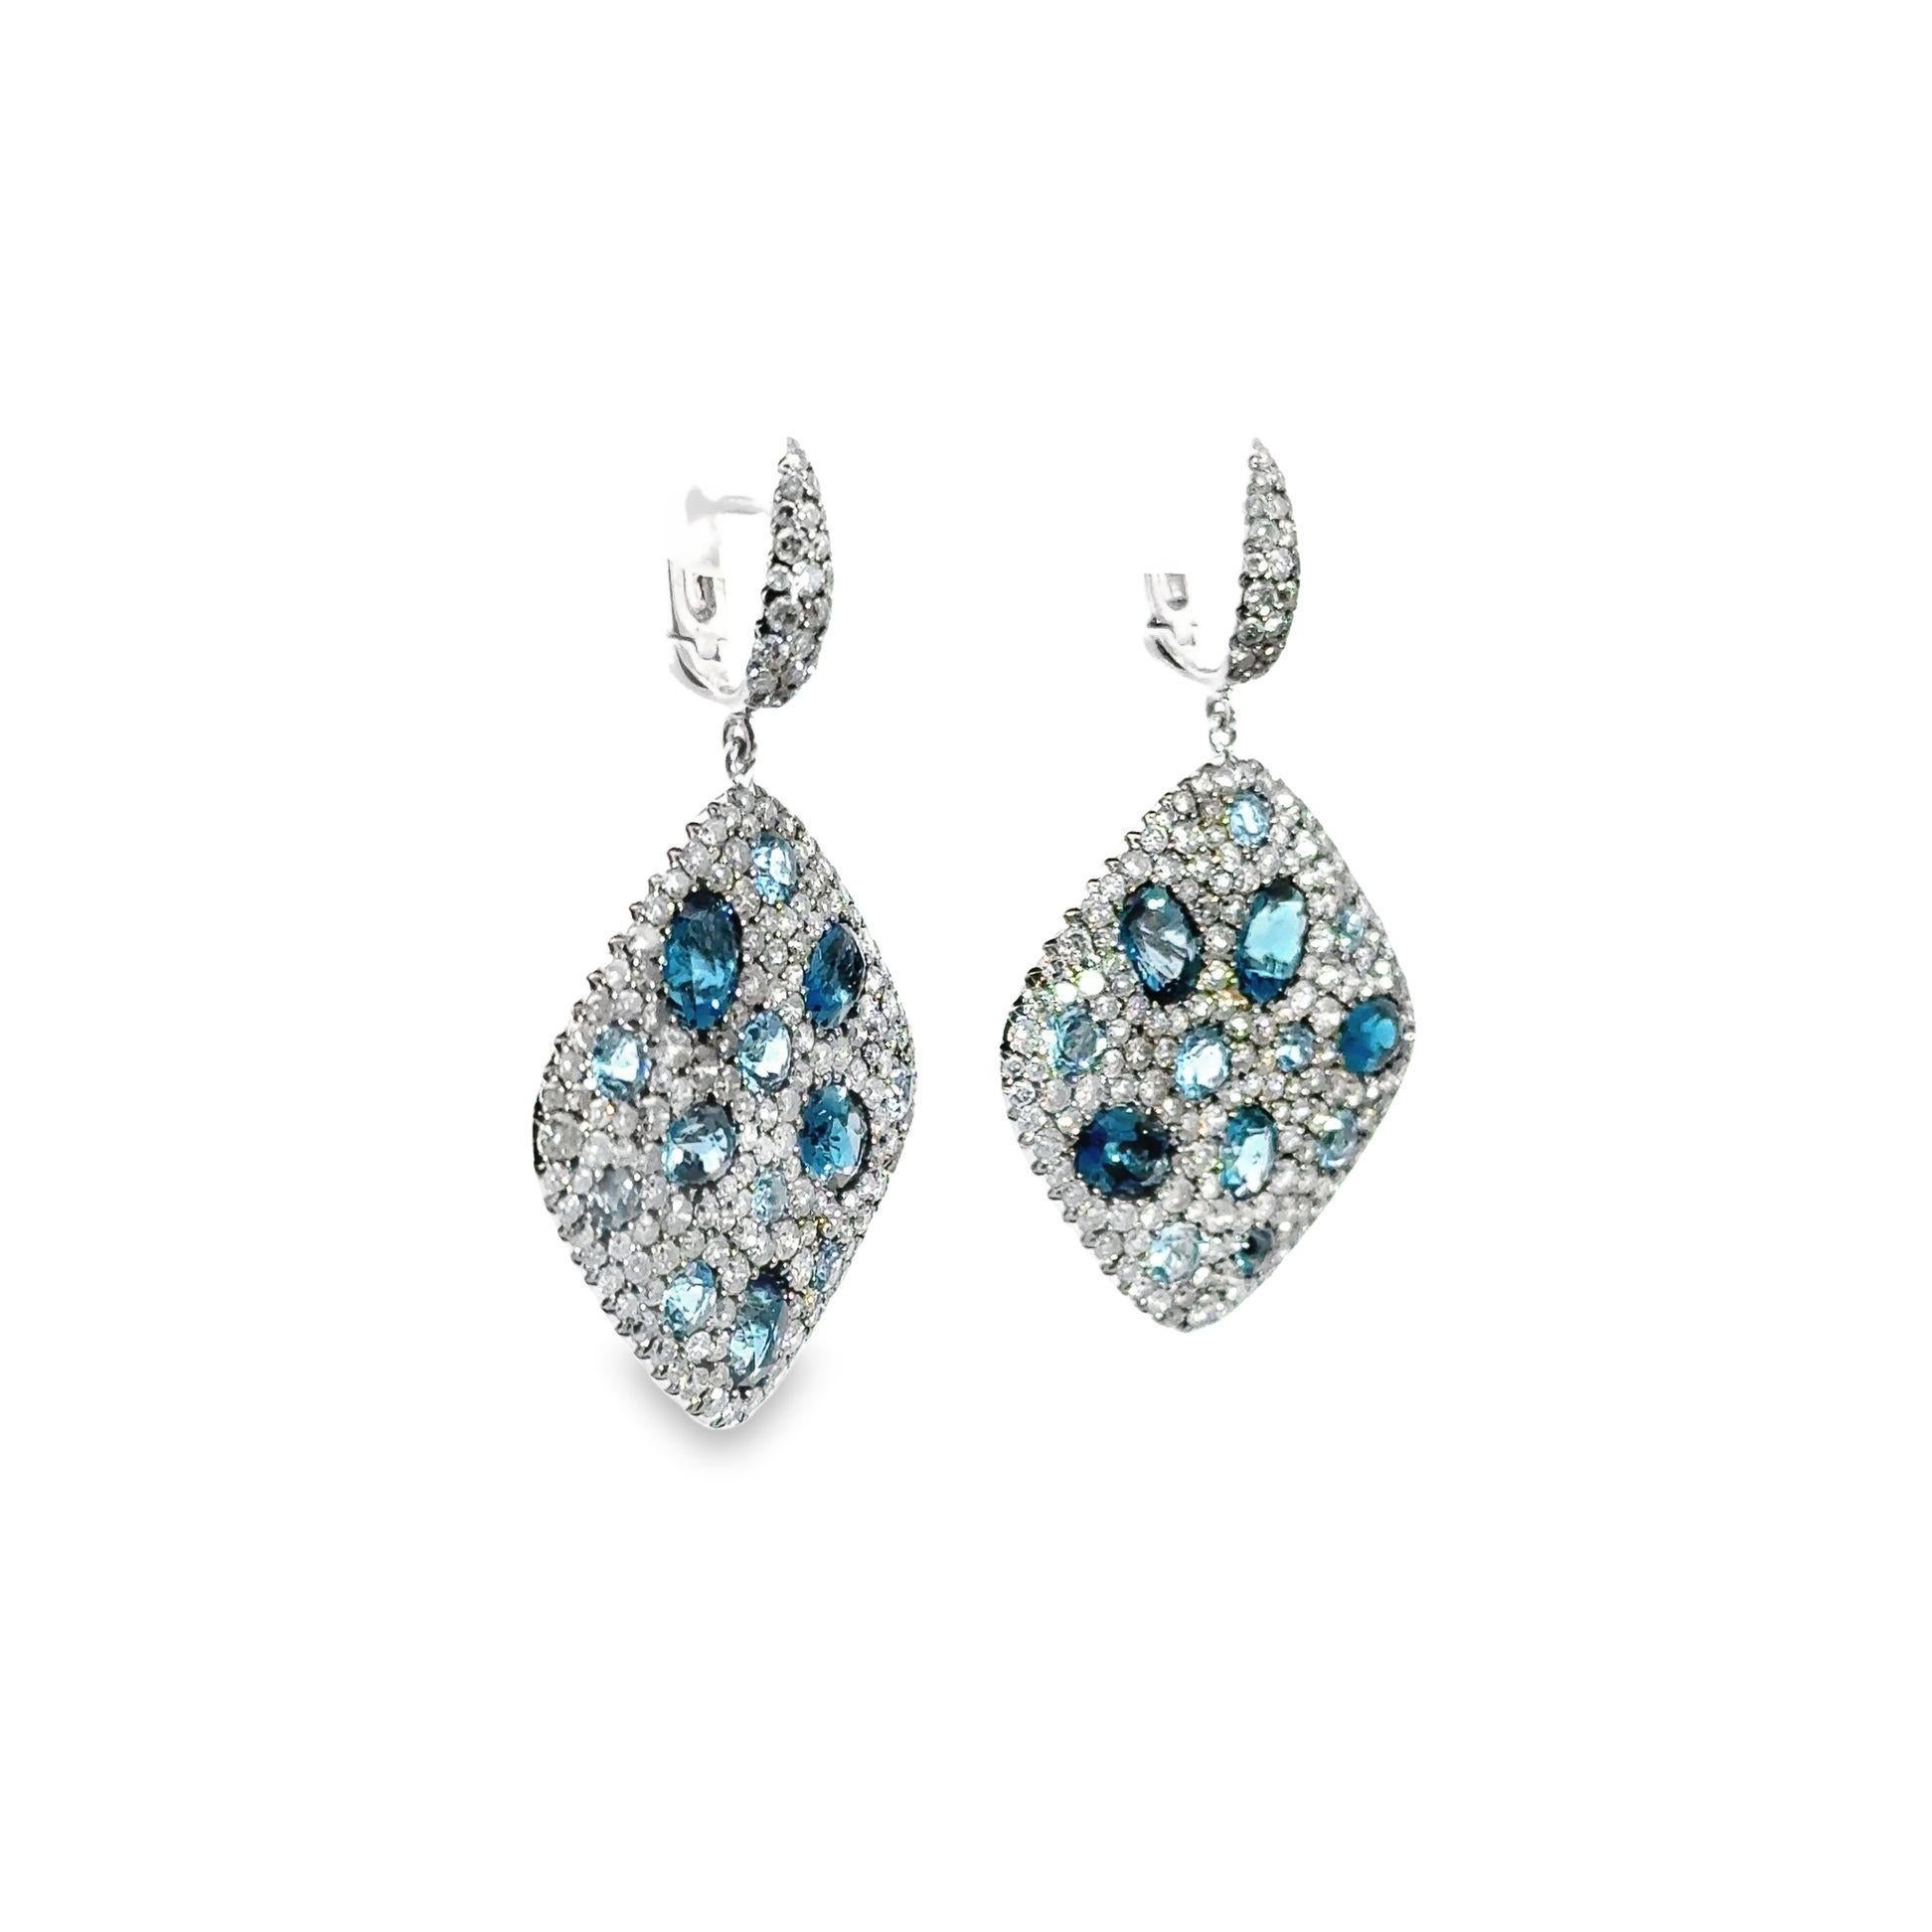 Portez ces exquises boucles d'oreilles bleues composées de 7,75 carats de diamants ronds éblouissants. La teinte profonde de la topaze bleue, d'un poids de 9,70 carats, crée une dynamique captivante qui attire le regard. Leur design élégant respire